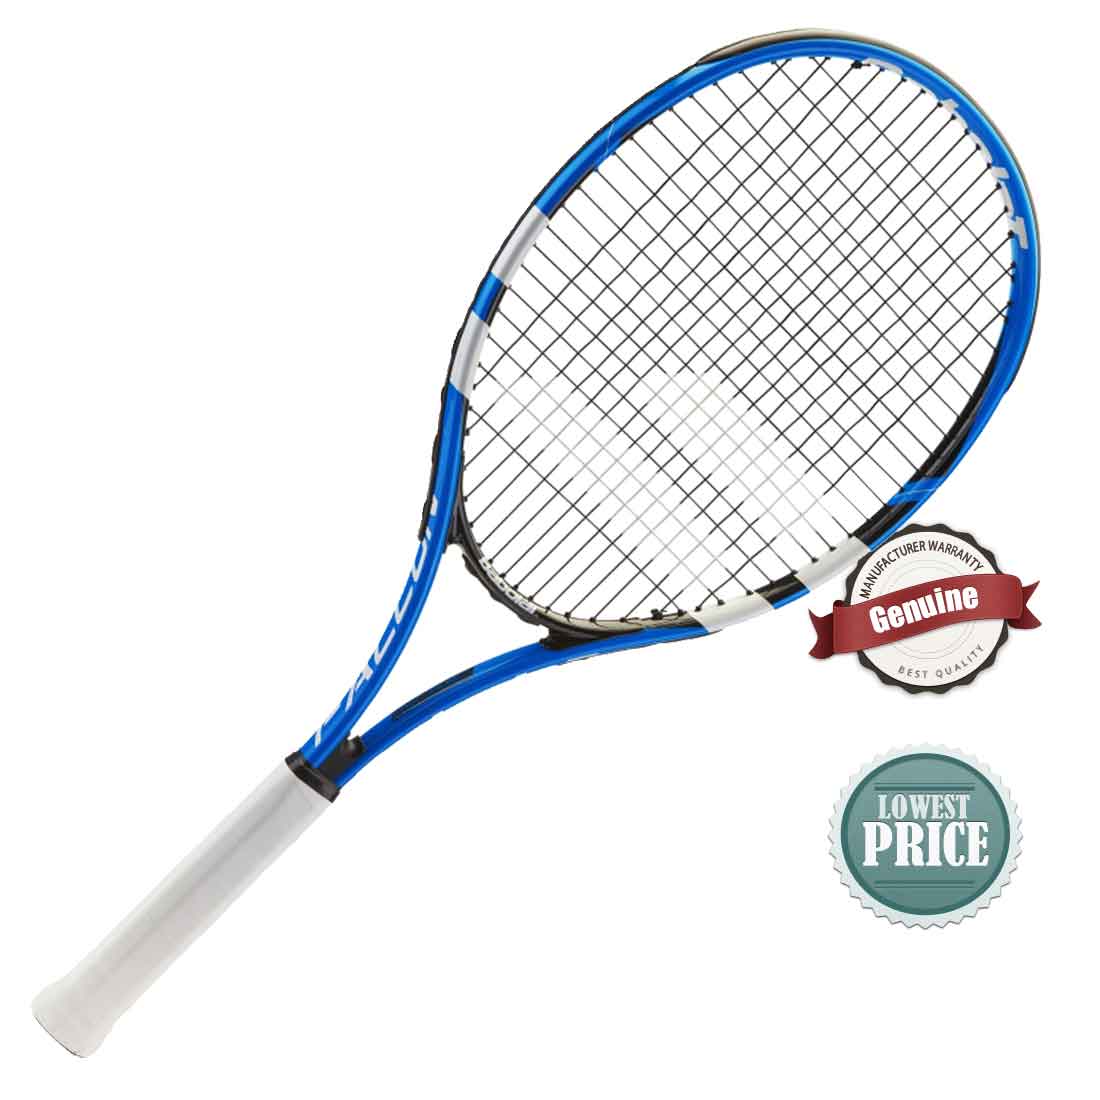 babolat lawn tennis racket price